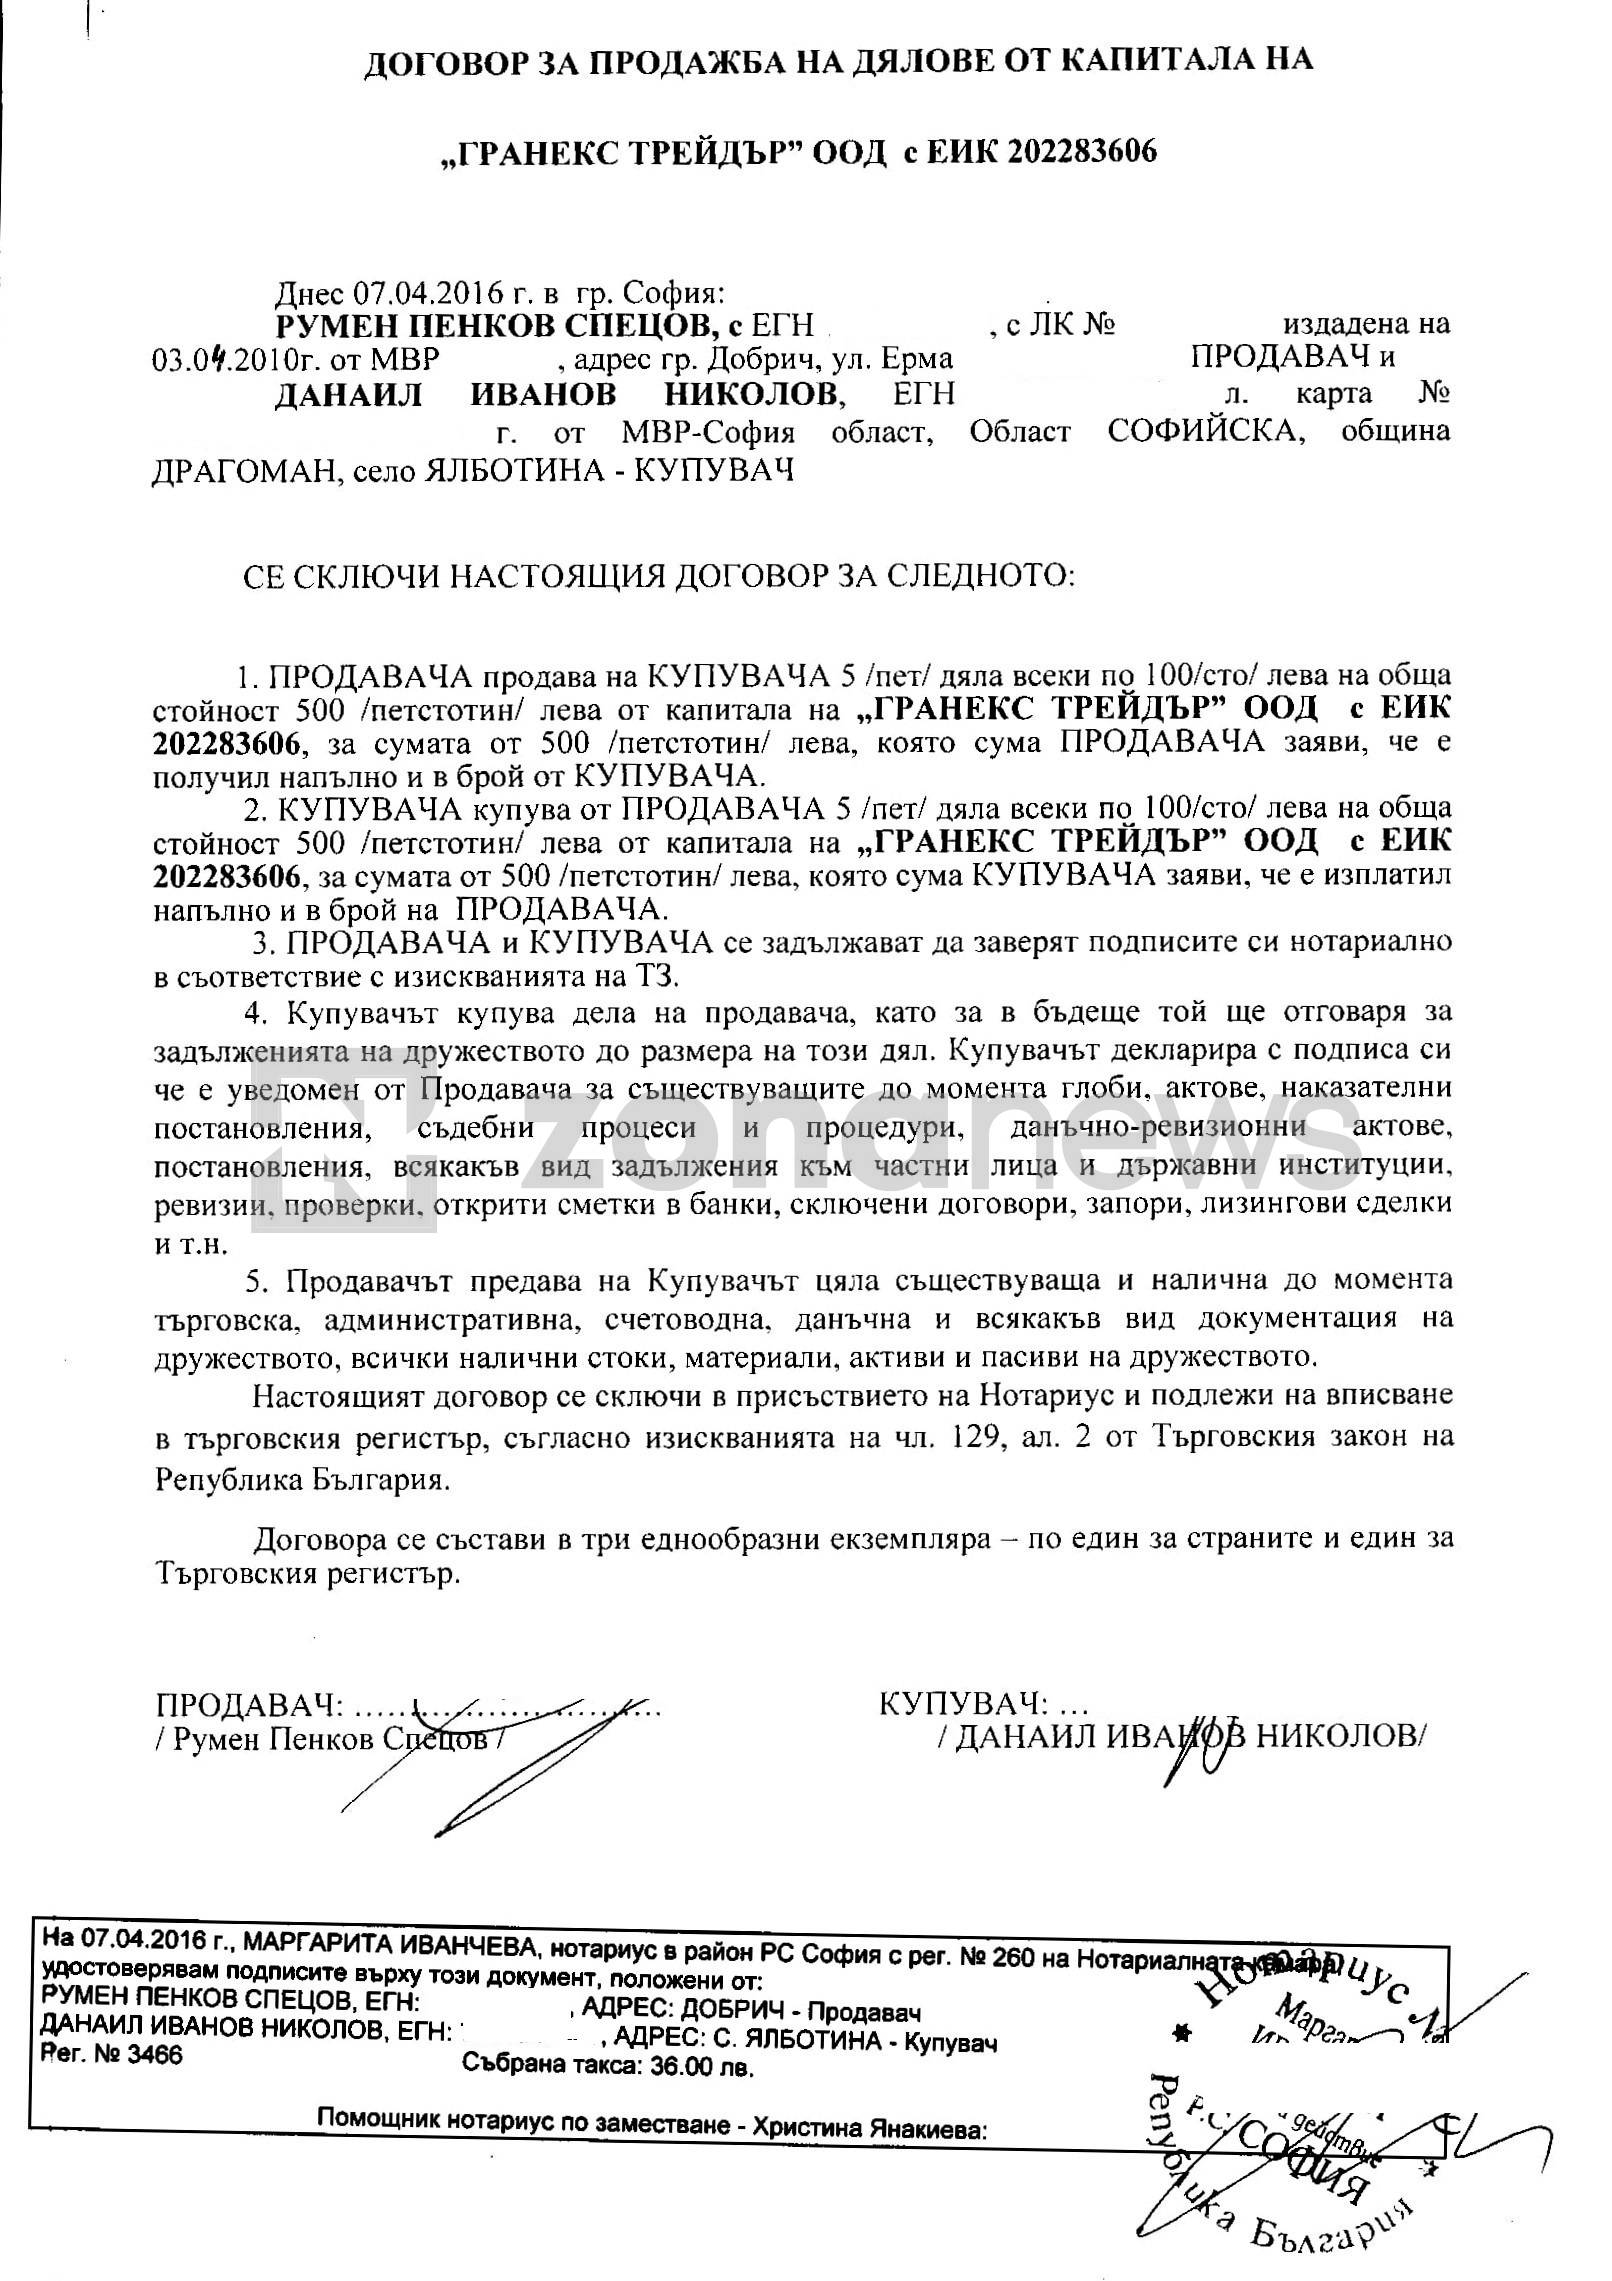 Договор за прехвърляне на Гранекс Трейдър от Румен и Слава Спецови на Данаил Николов